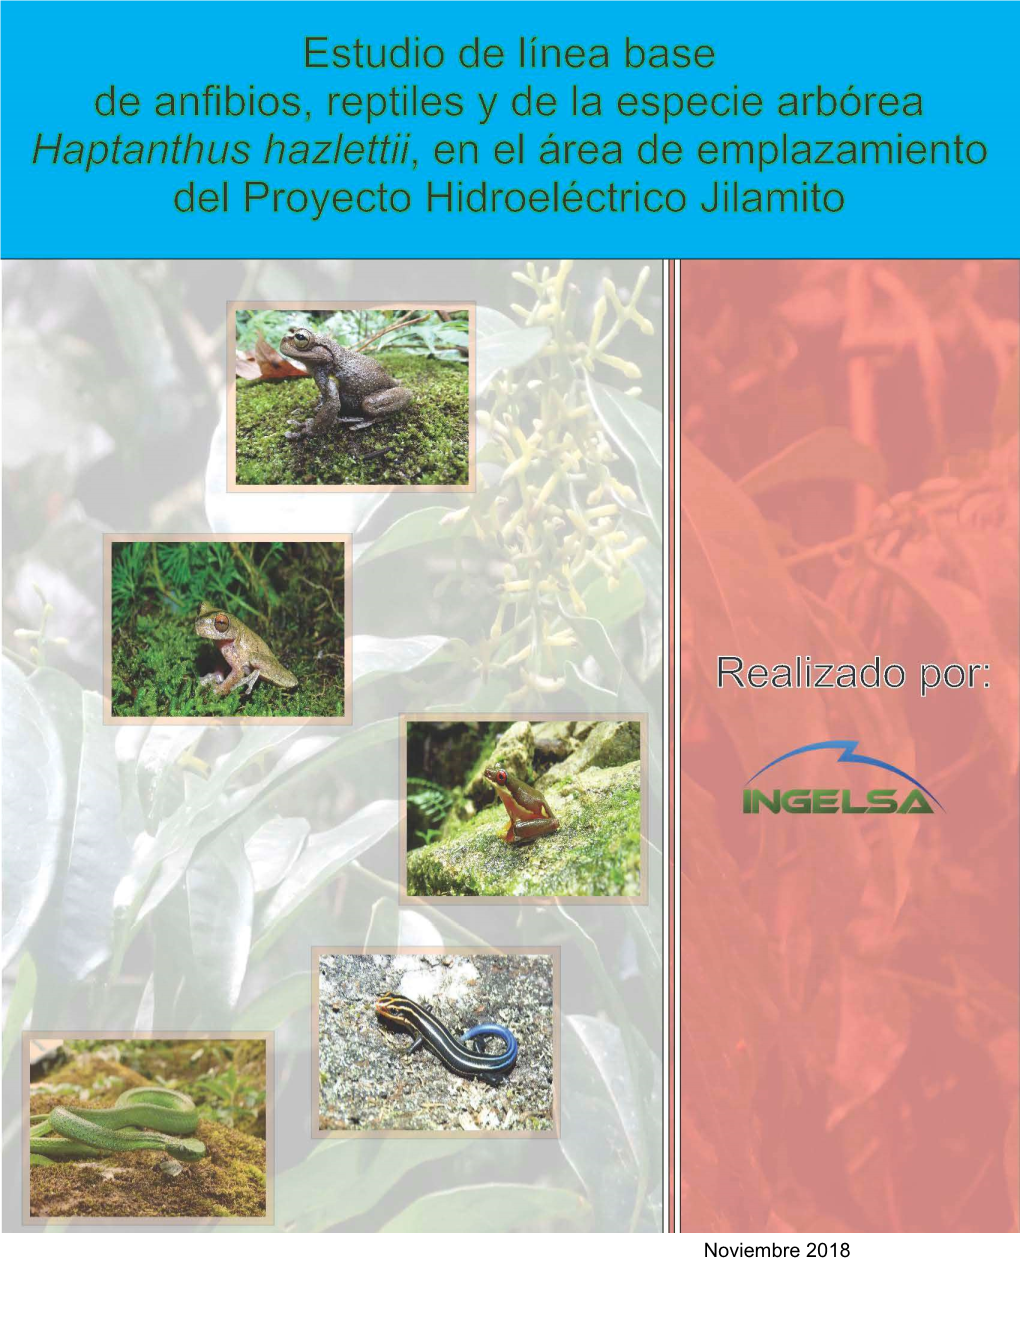 Noviembre 2018 Informe De Línea Base De Anfibios, Reptiles Y Haptanthus Hazlettii